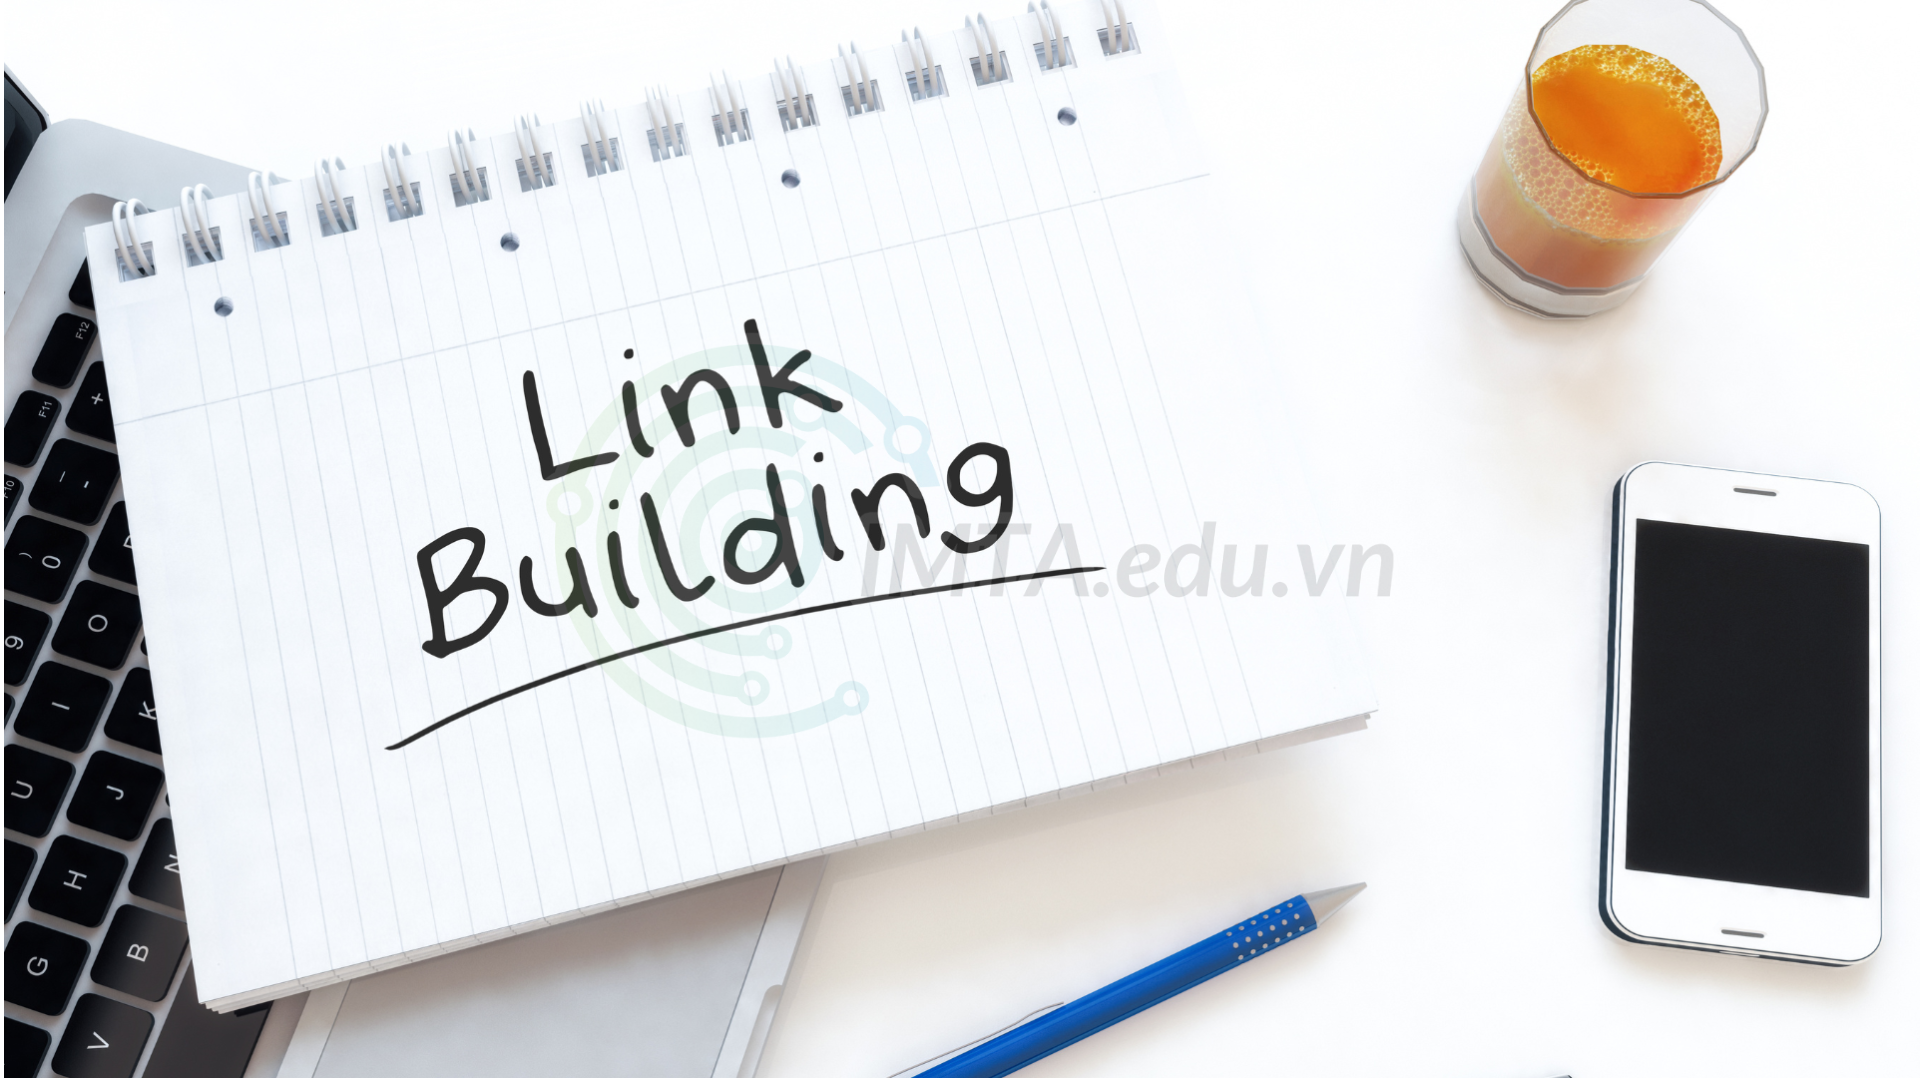 Link Building là gì?